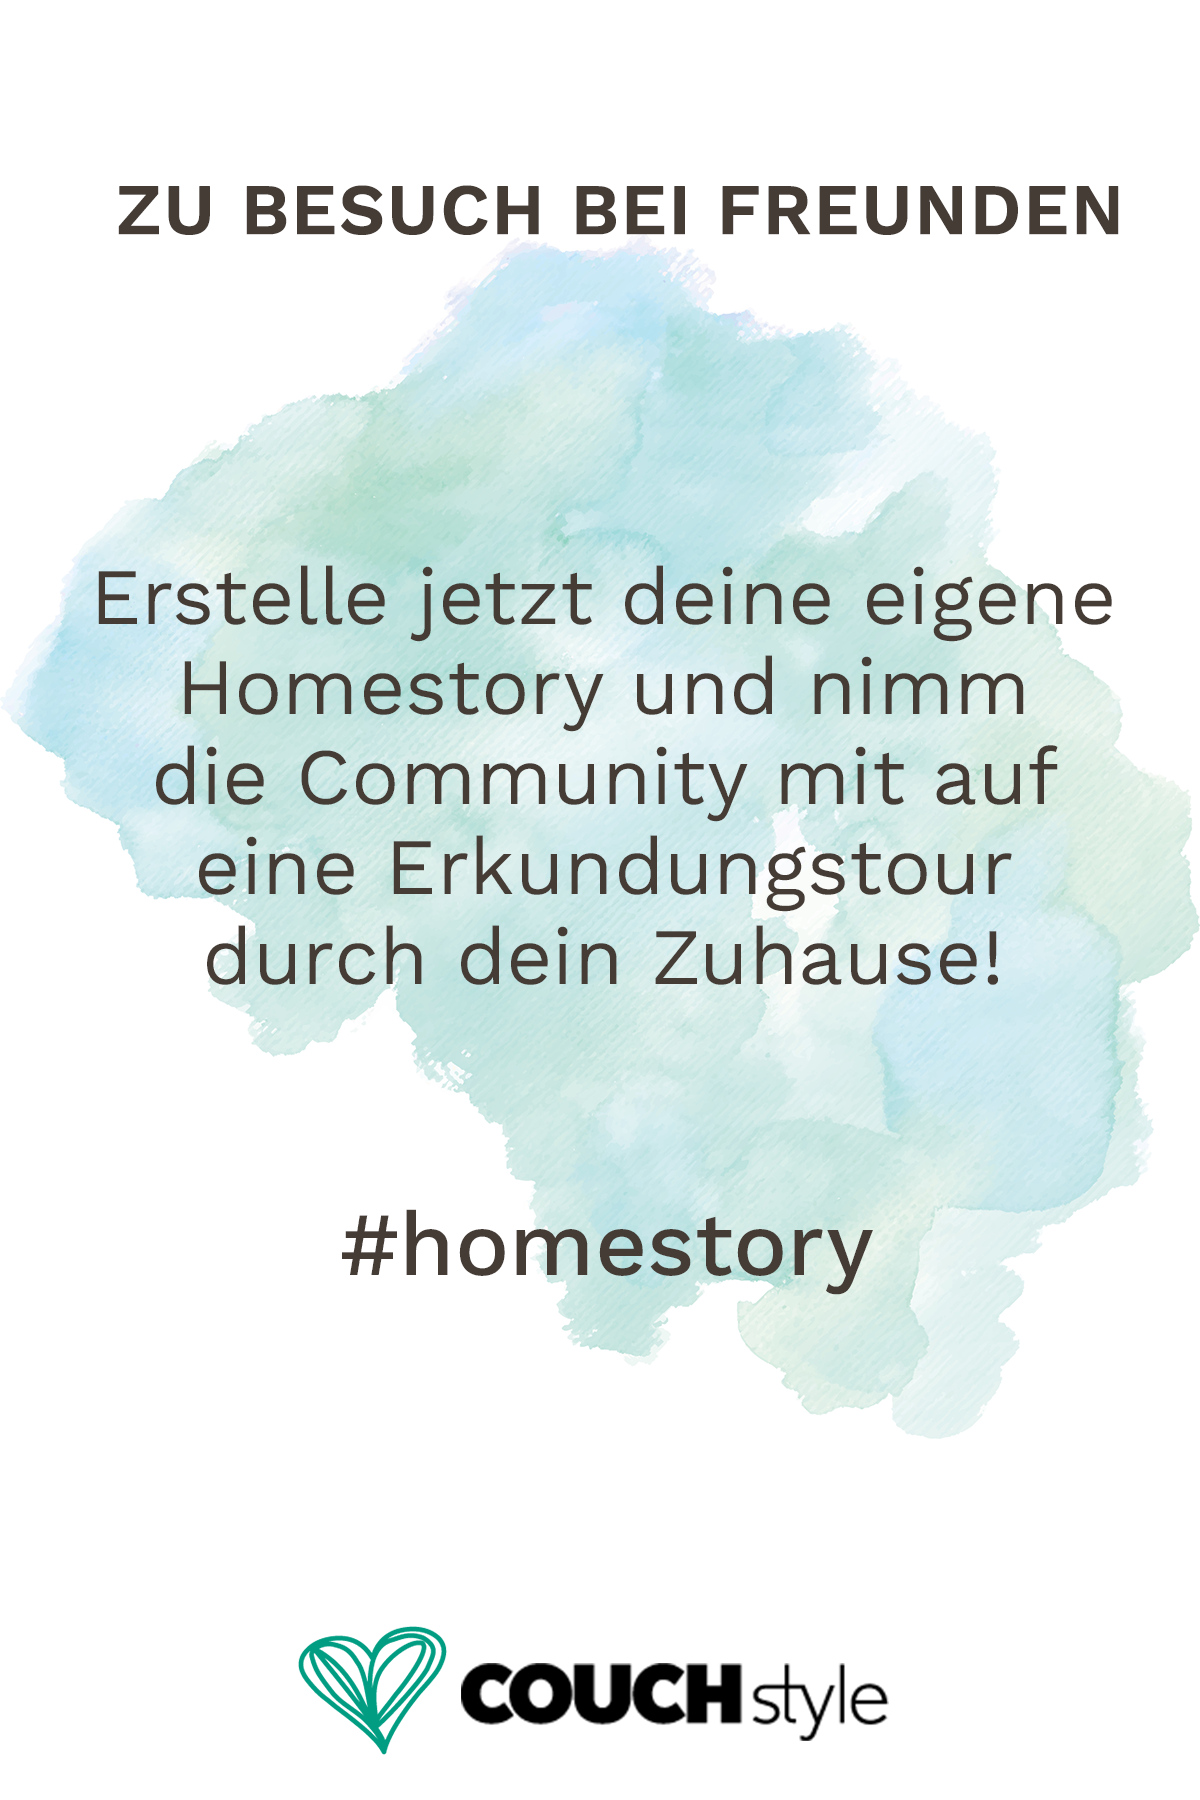 Teile jetzt deine schönsten Fotos mit dem Hashtag #homestory auf COUCHstyle und füge sie zu deiner Homestory zusammen!